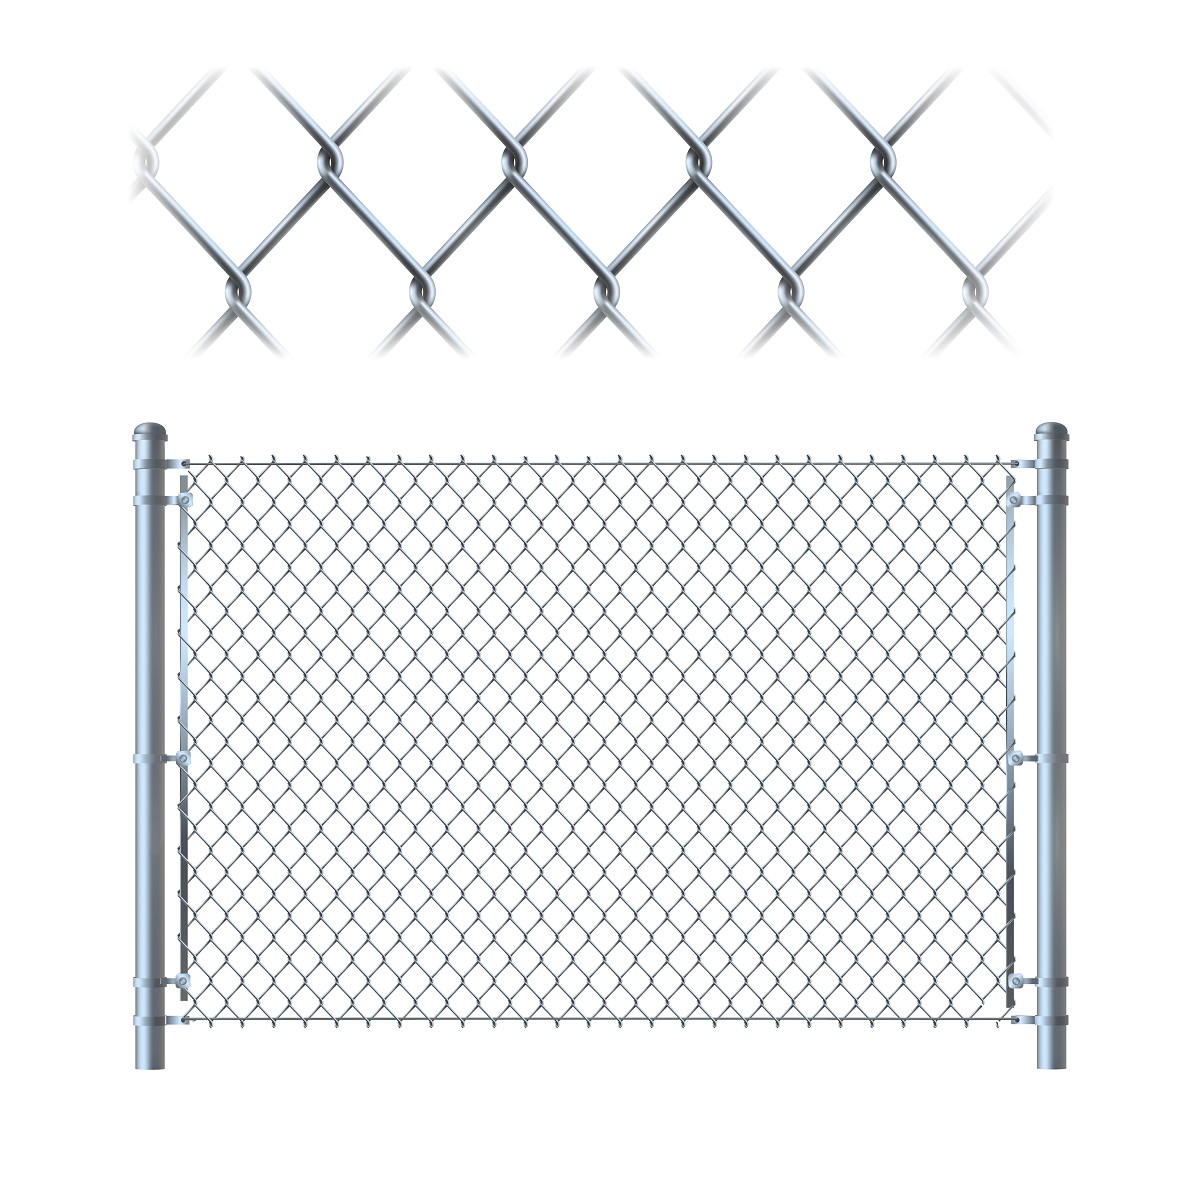 10 pezzi di morsetti per bretelle tondi Ø 5 cm per la costruzione di recinzioni in marrone